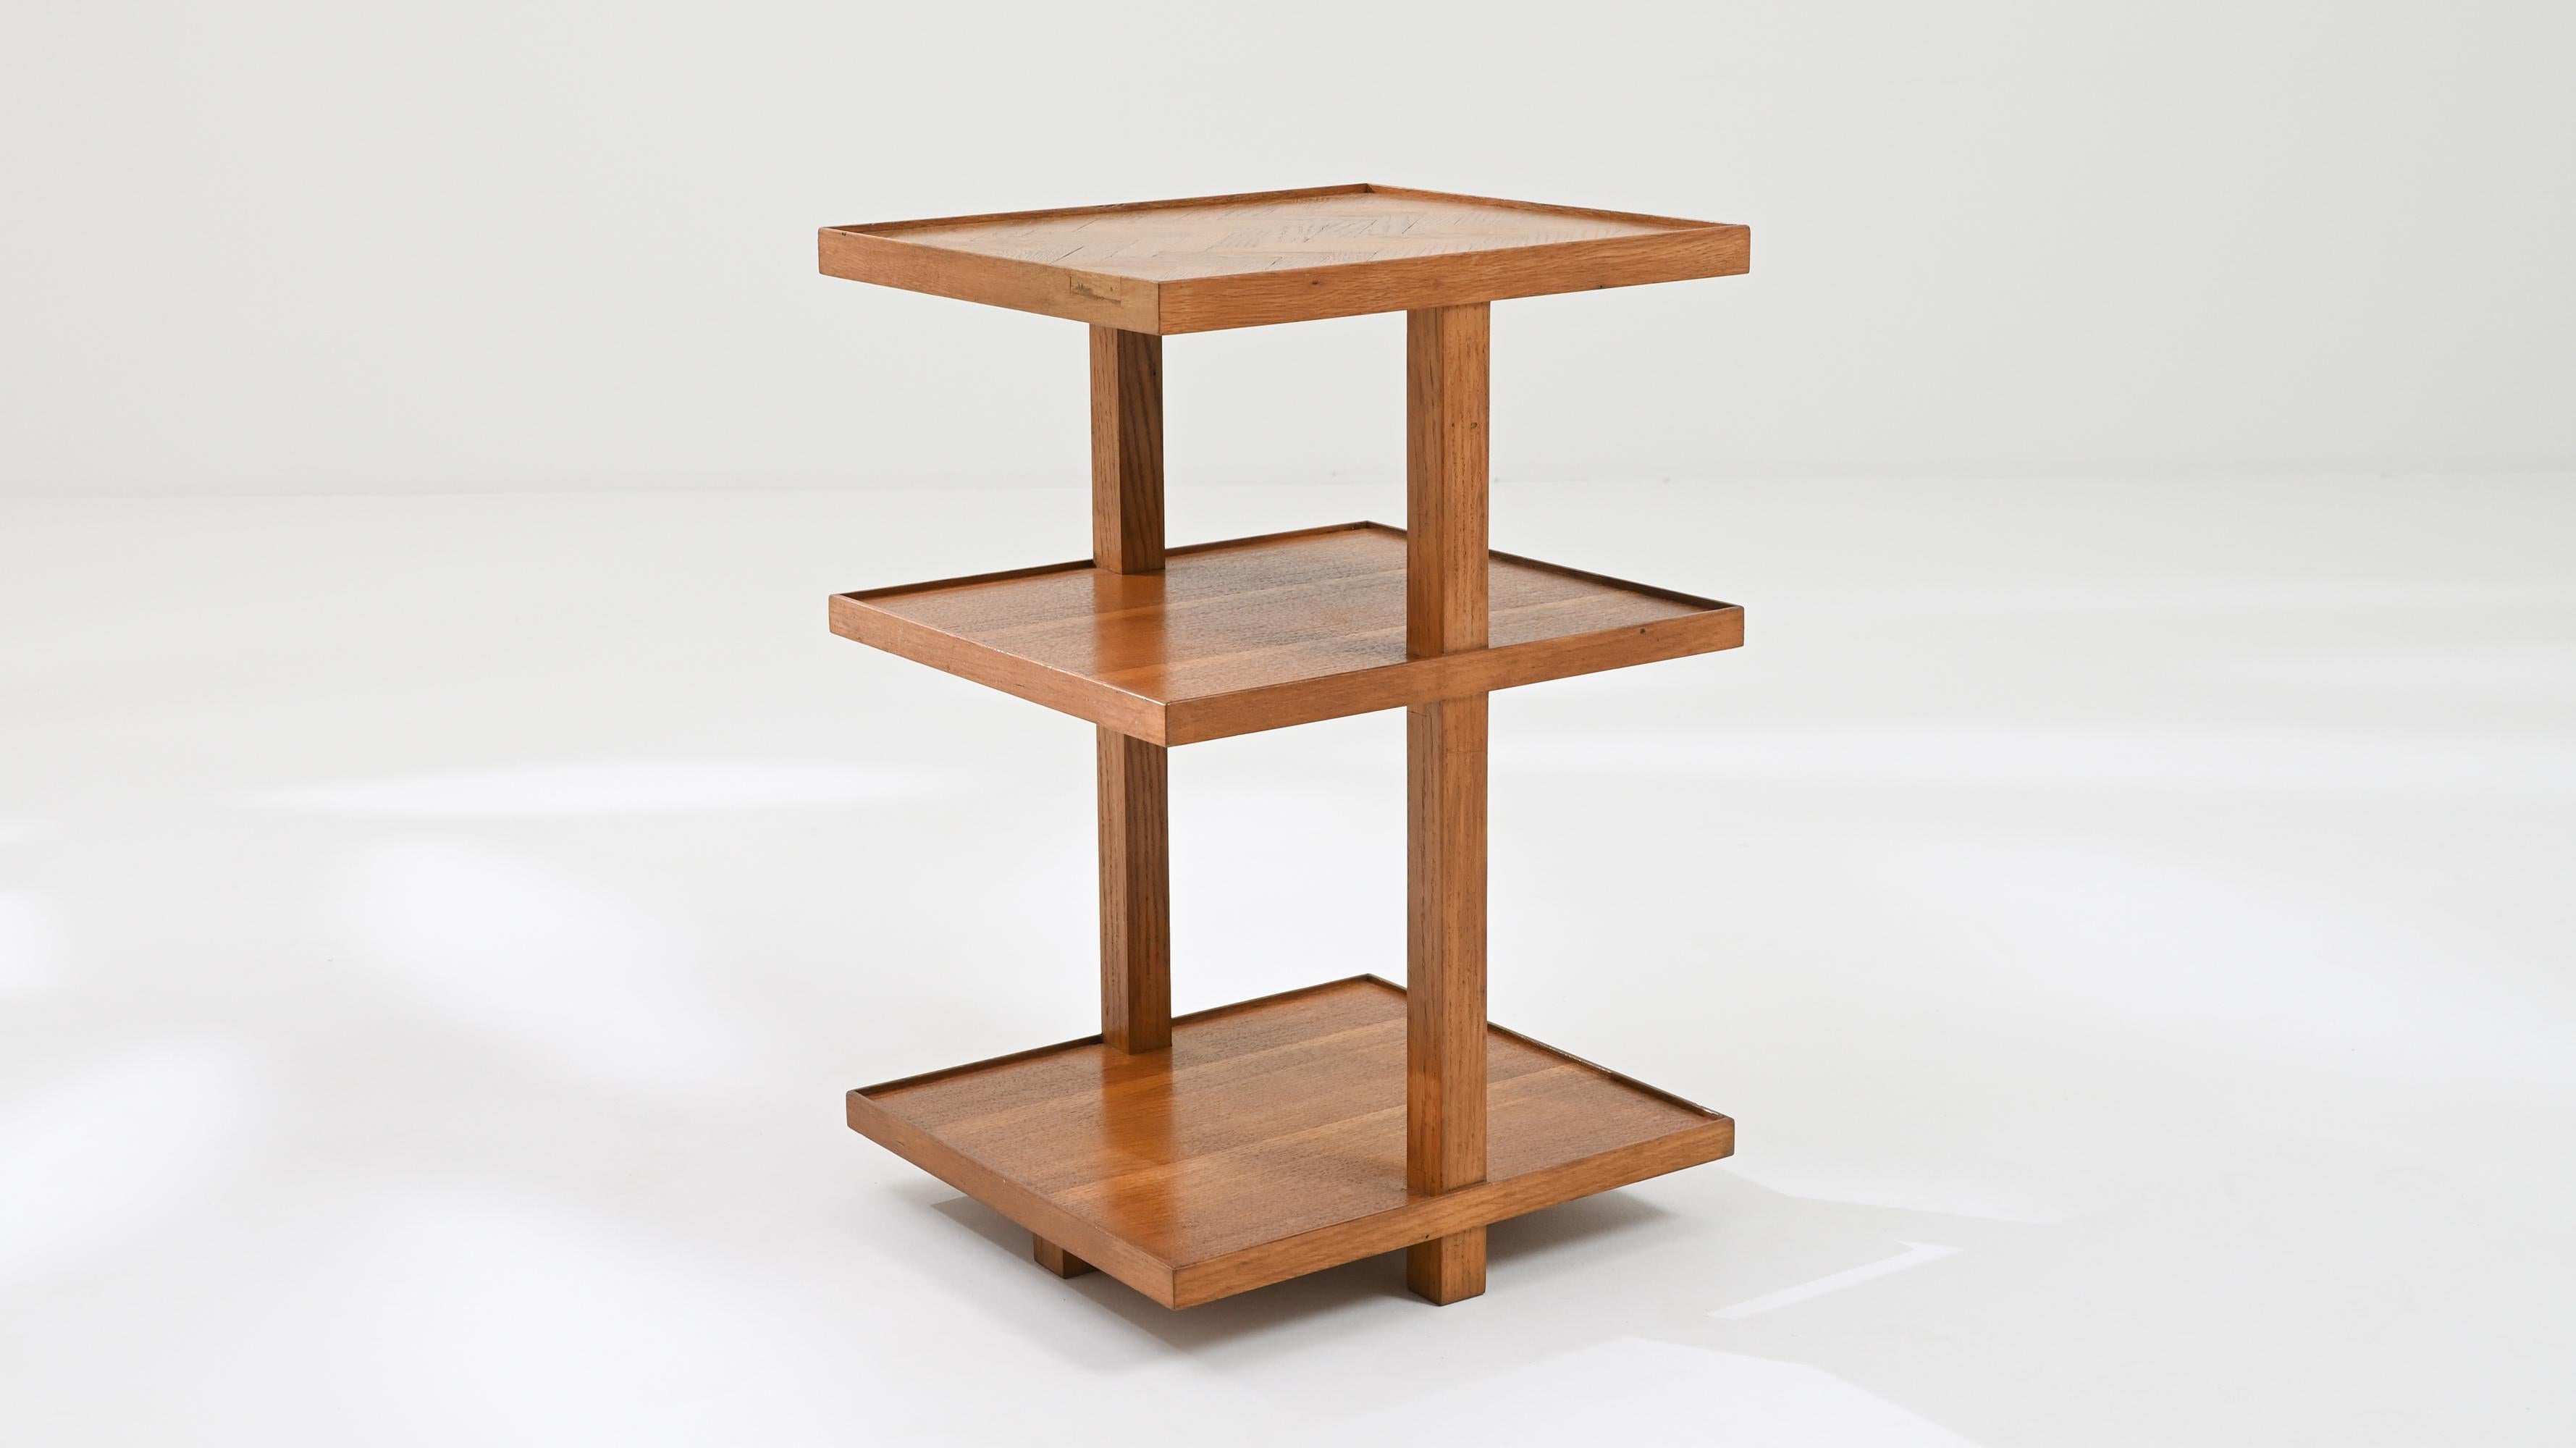 Enrichissez votre espace de vie avec le charme discret d'une table basse en bois français du 20e siècle. Fabriquée dans une couleur bois chaleureuse, cette petite table respire la simplicité et l'élégance. Son design comporte trois étagères, offrant